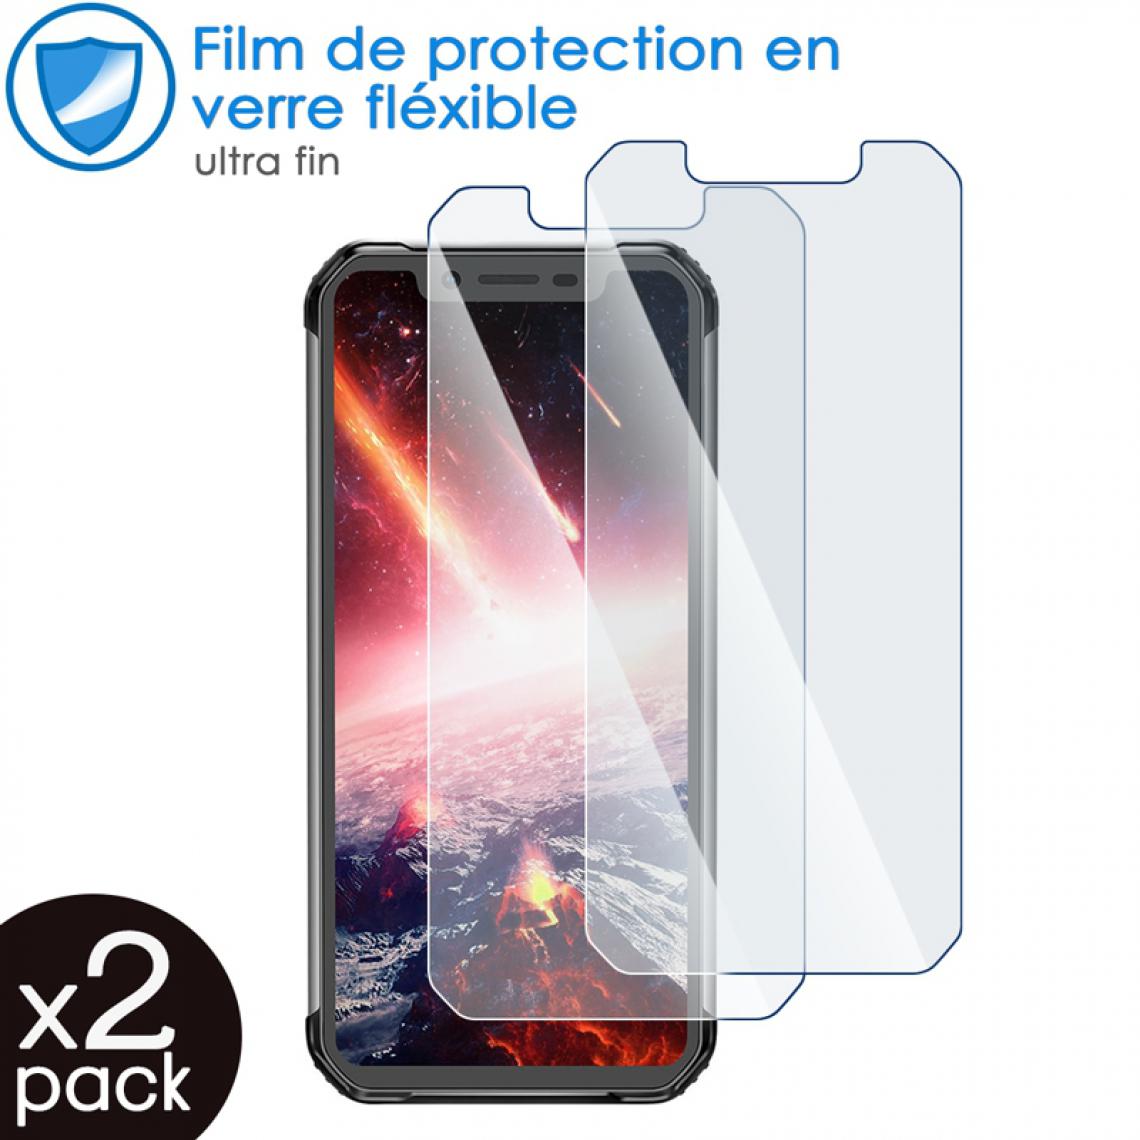 Karylax - Film de Protection d'écran en Verre Fléxible Dureté 9H pour Smartphone Blackview BV9600 Pro (Pack x2) - Protection écran smartphone